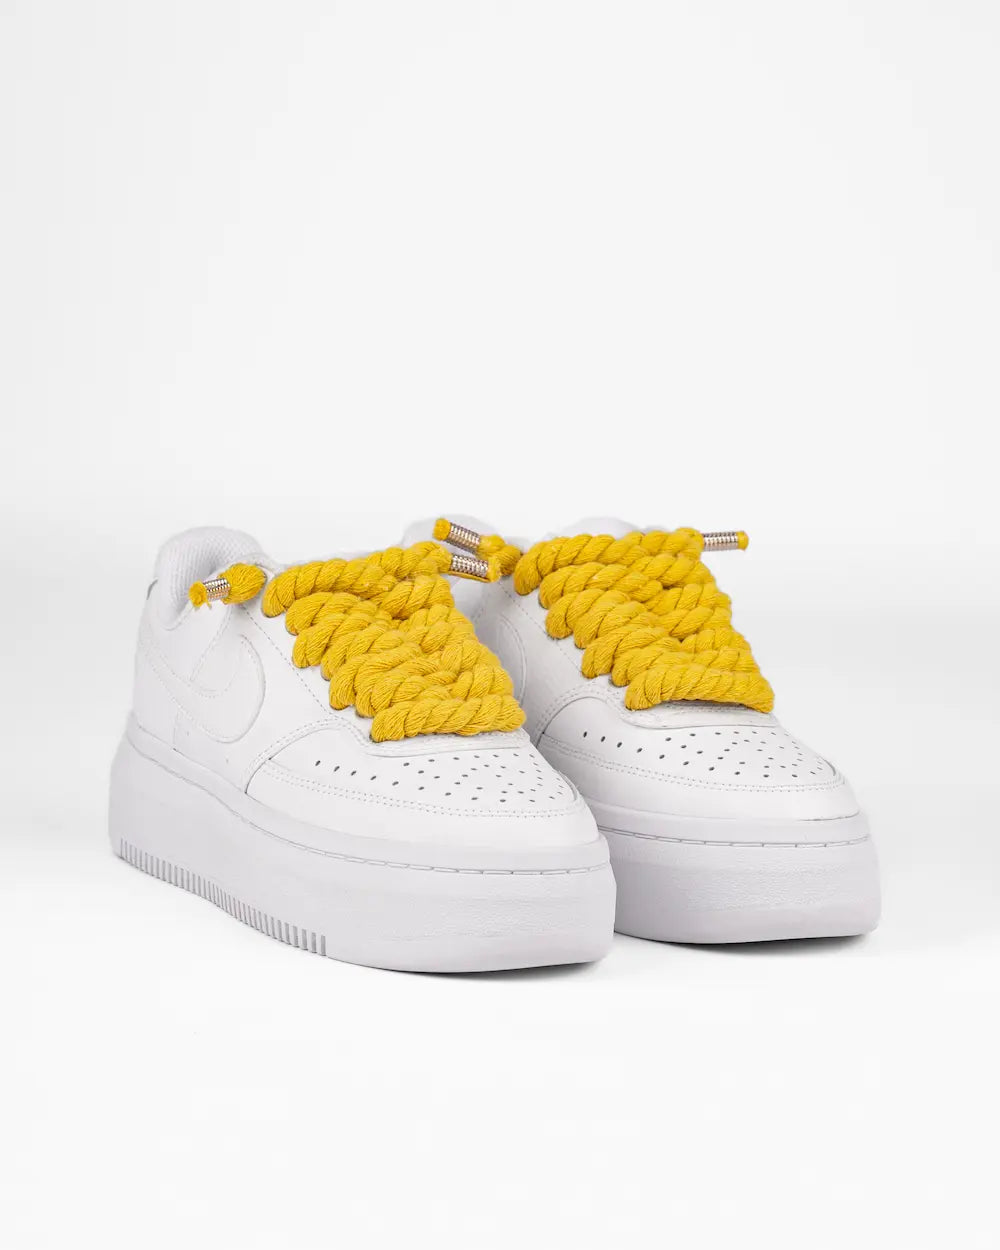 Nike Court Vision Platform personalizzata con lacci in corda grossi gialli